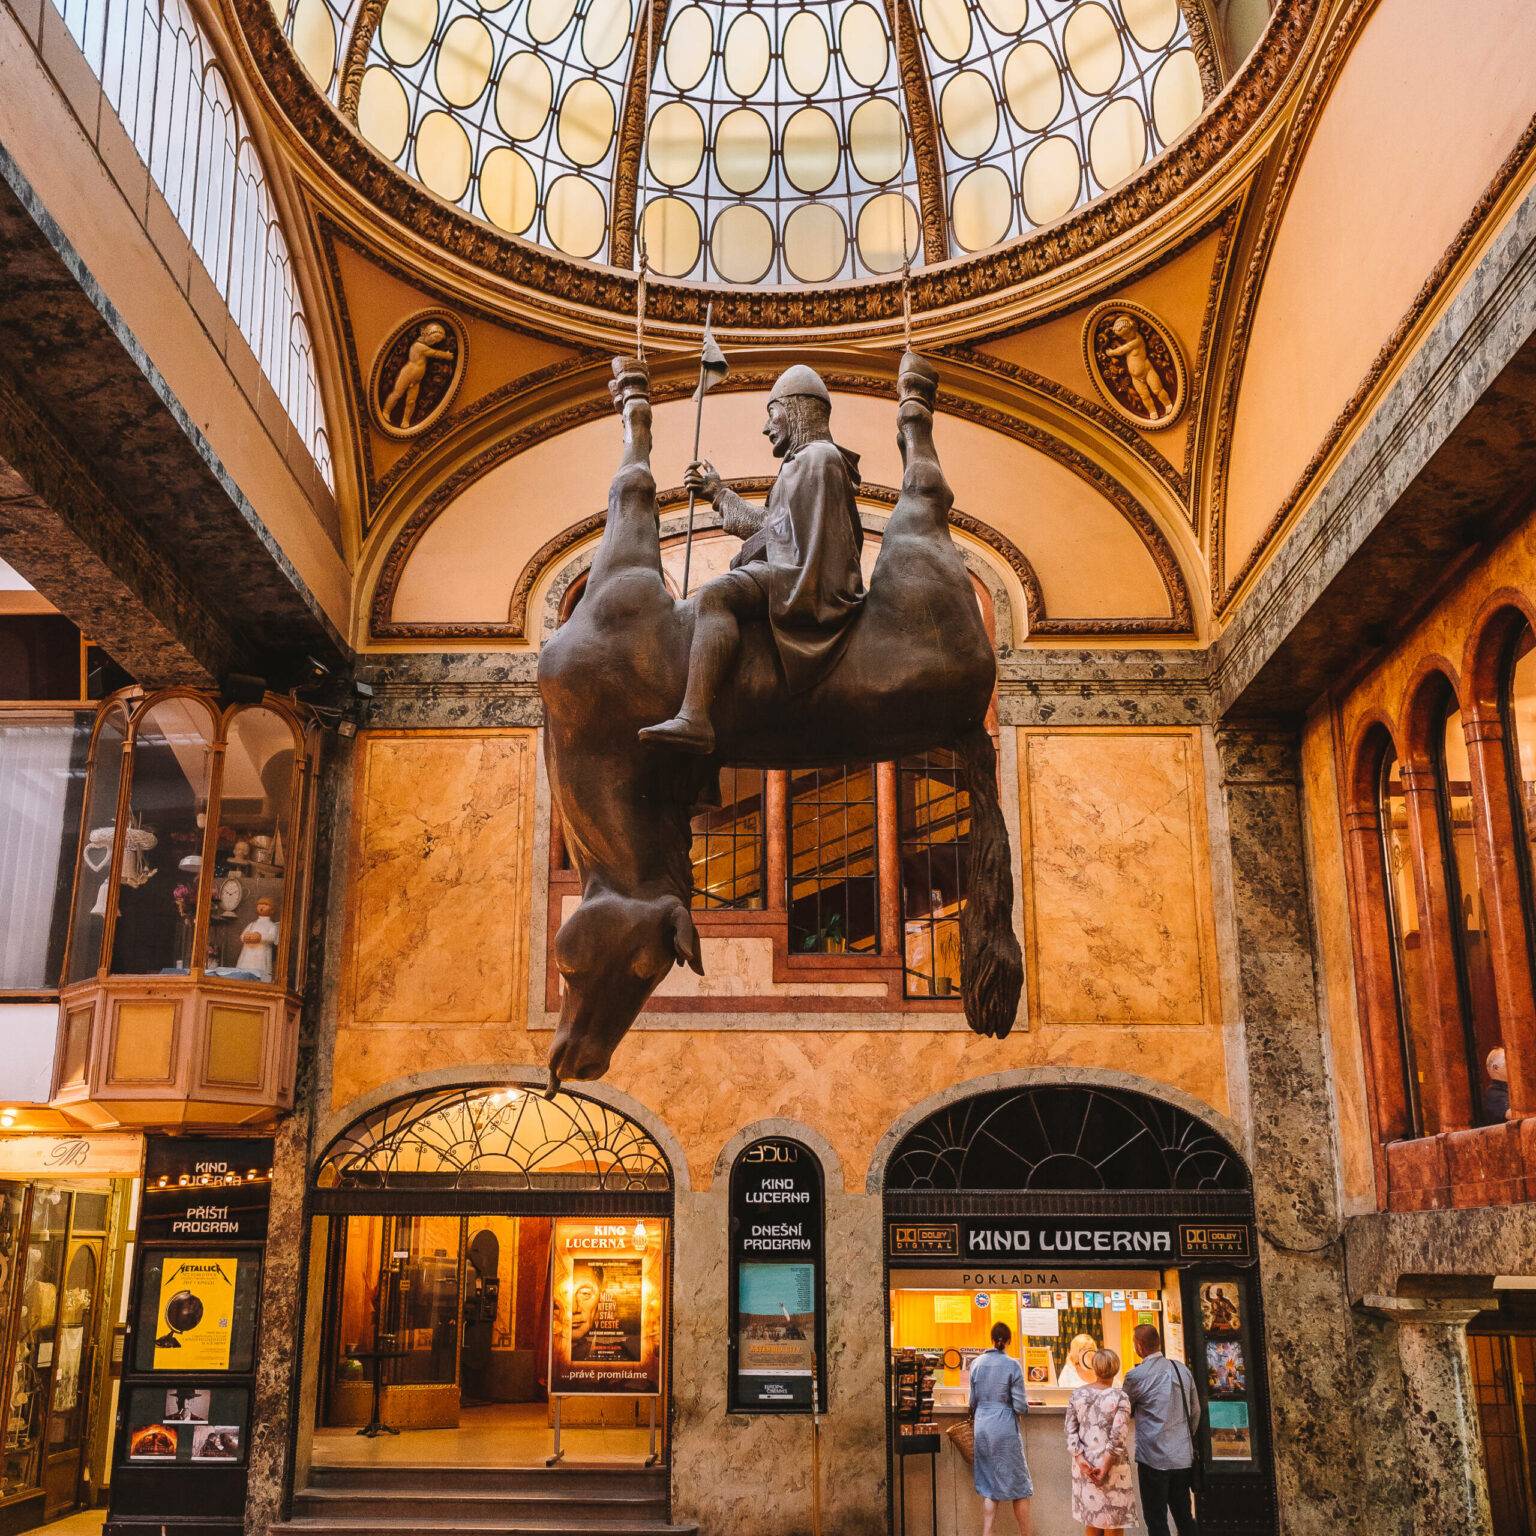 Ein kopfüberhängendes Pferd mit einem Reiter auf dem Bauch bildet das Denkmal der Wenzel-Statue in der Lucerna Passage in Prag.